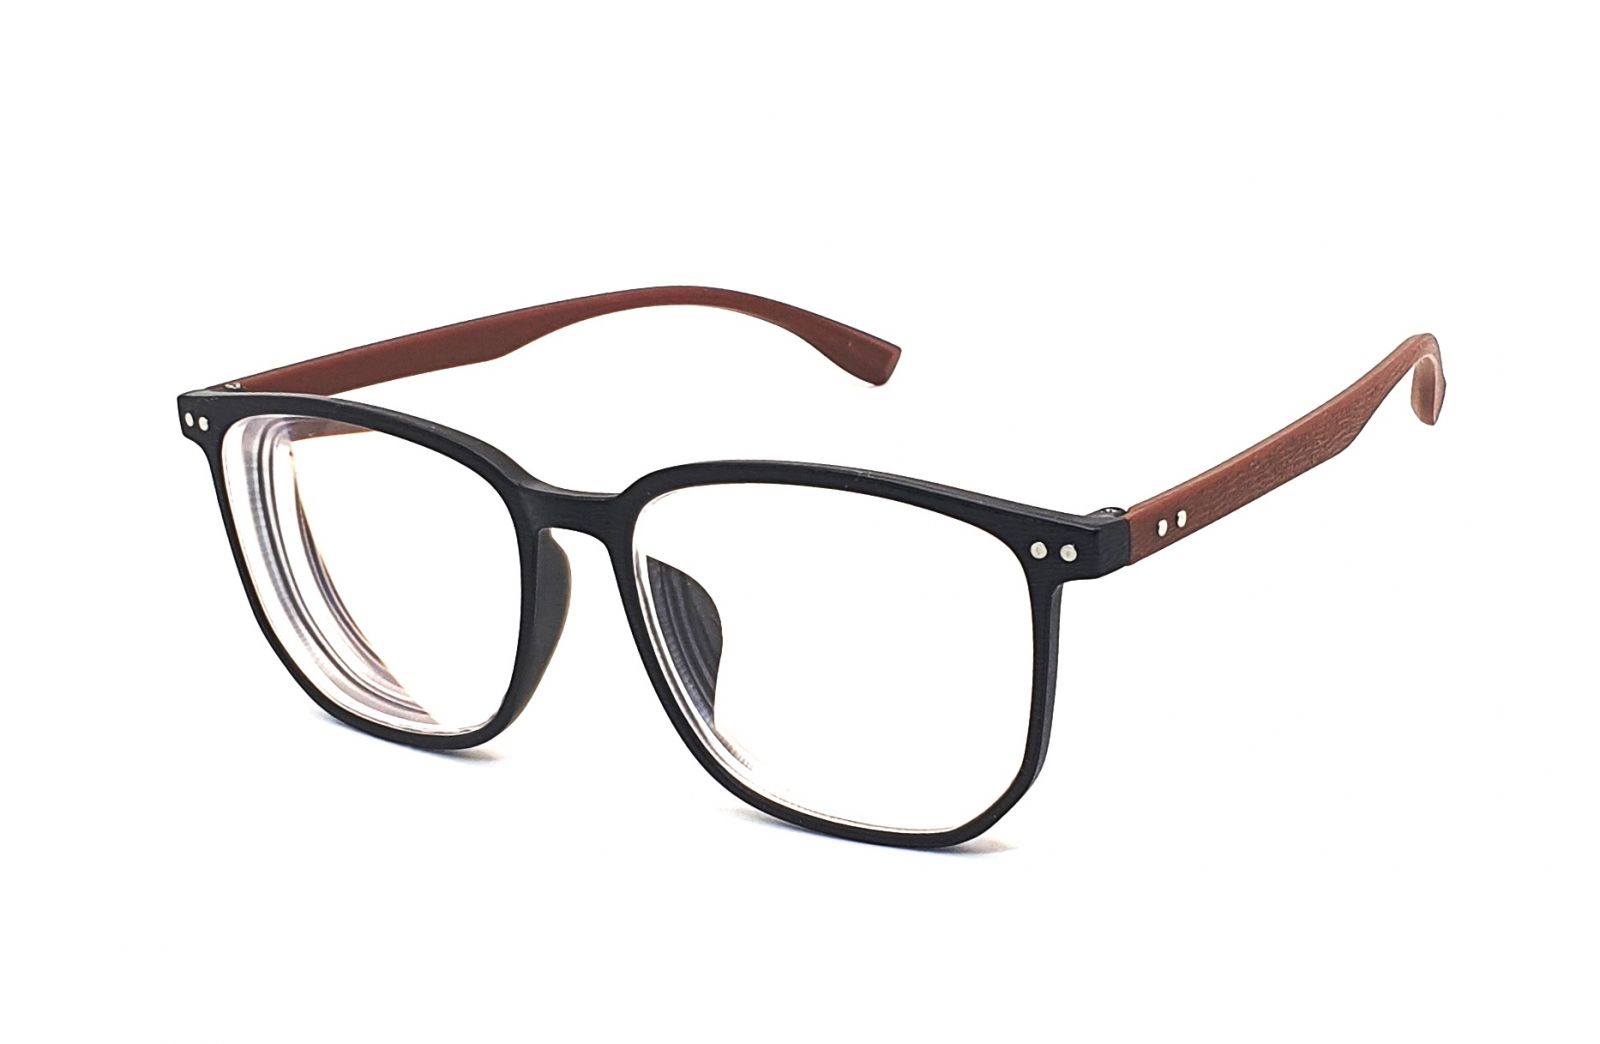 Samozabarvovací dioptrické brýle F23 / -1,50 black/brown